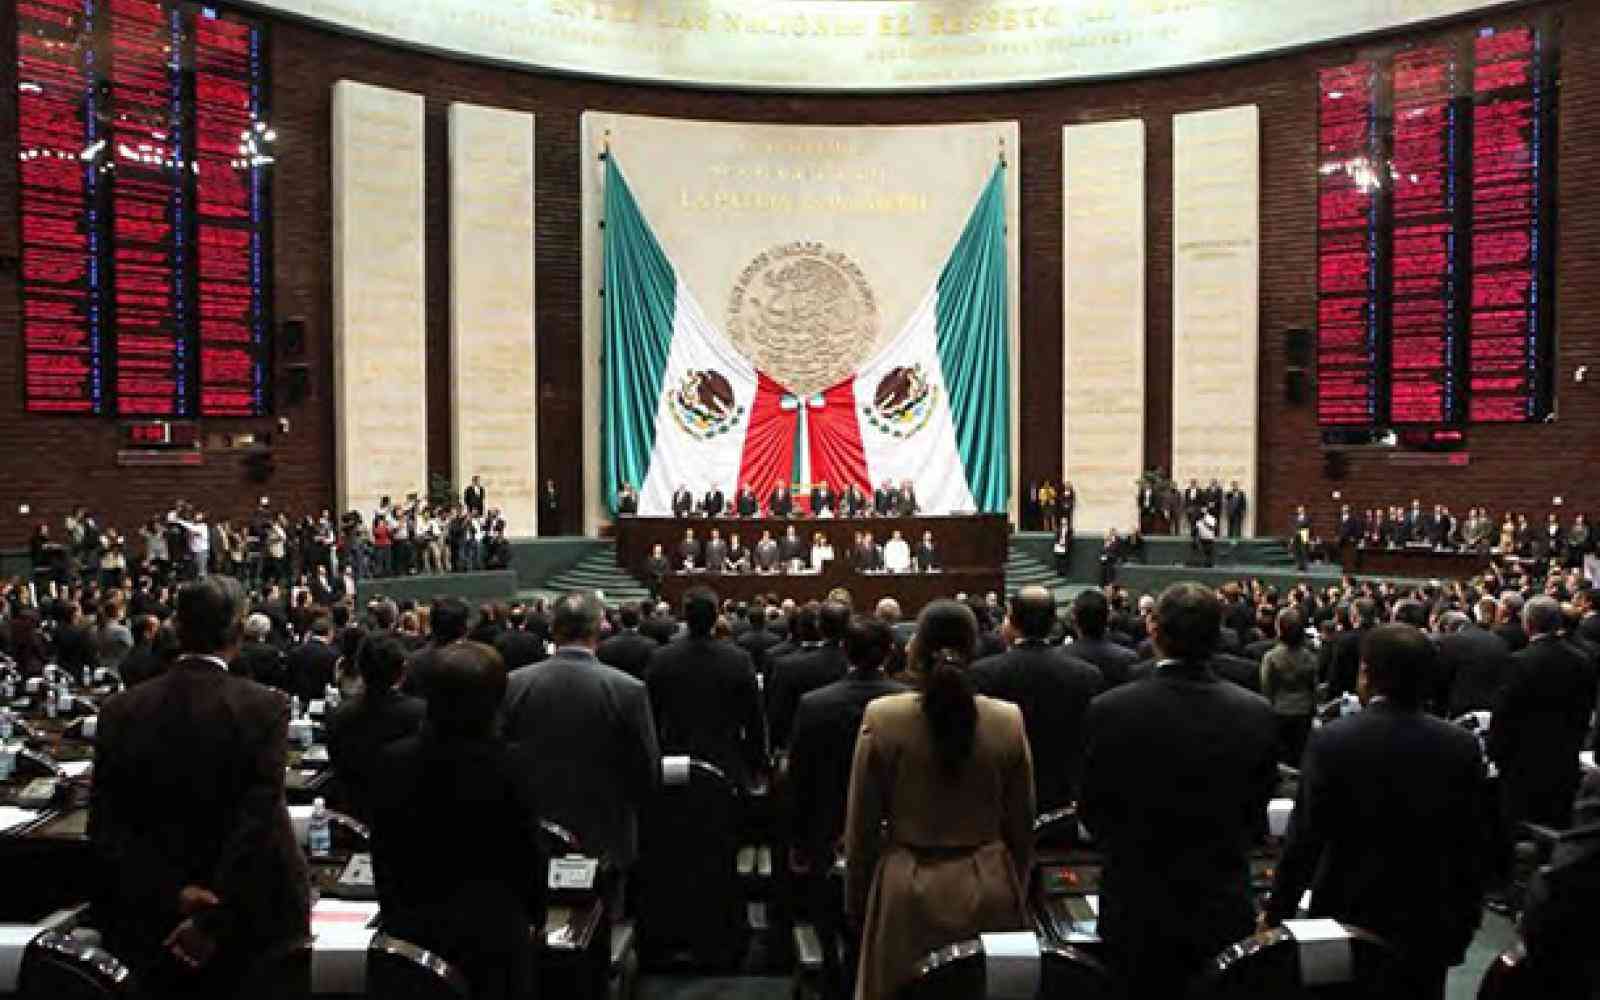 Mexico Congress